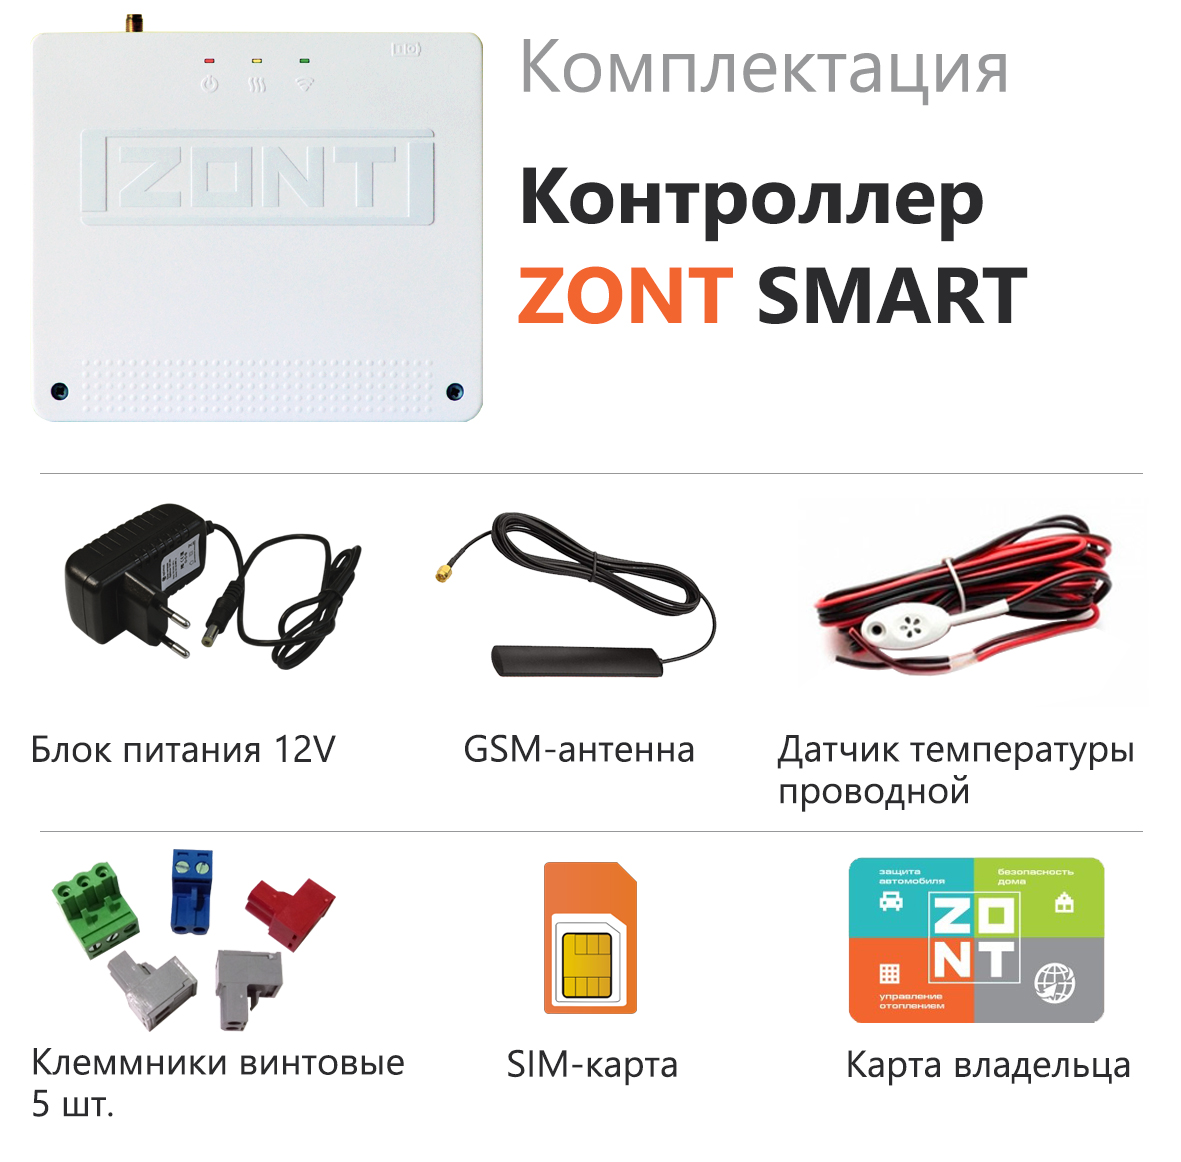 Детальное изображение товара "Отопительный контроллер ZONT SMART" из каталога оборудования для видеонаблюдения